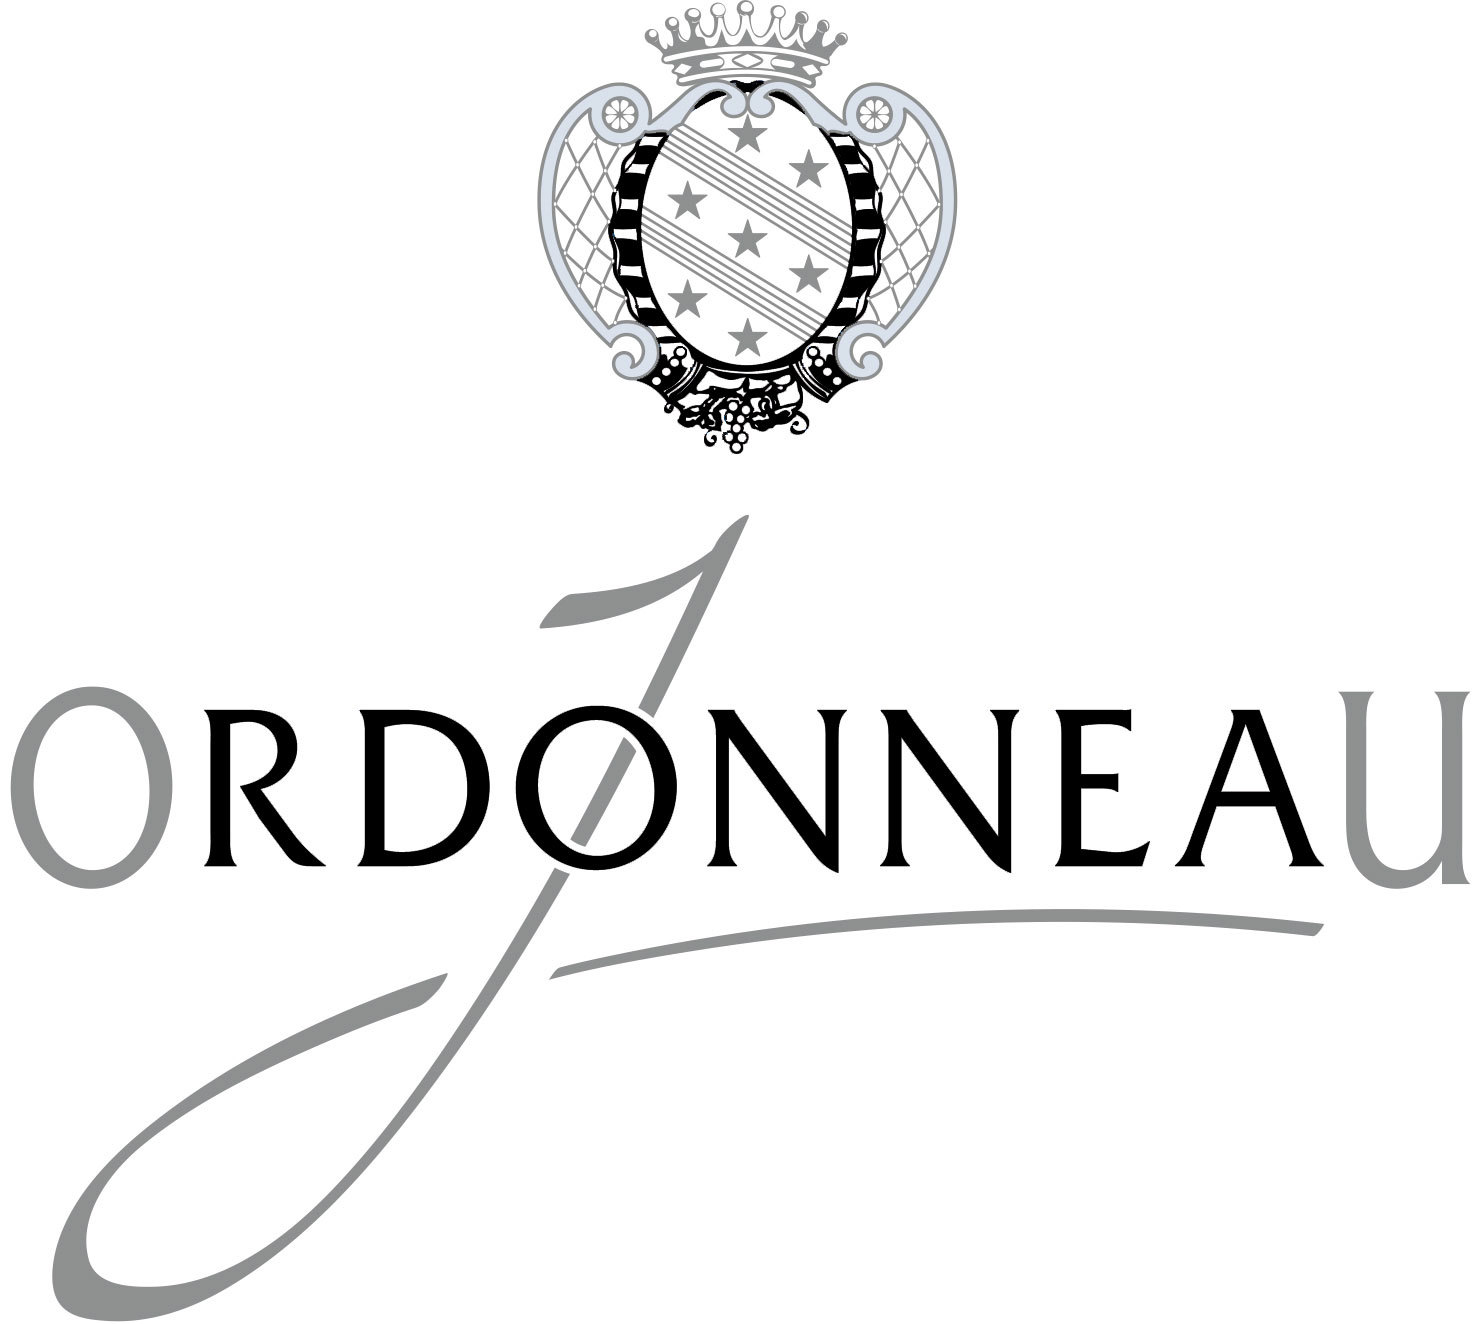 Ordonneau Cognac